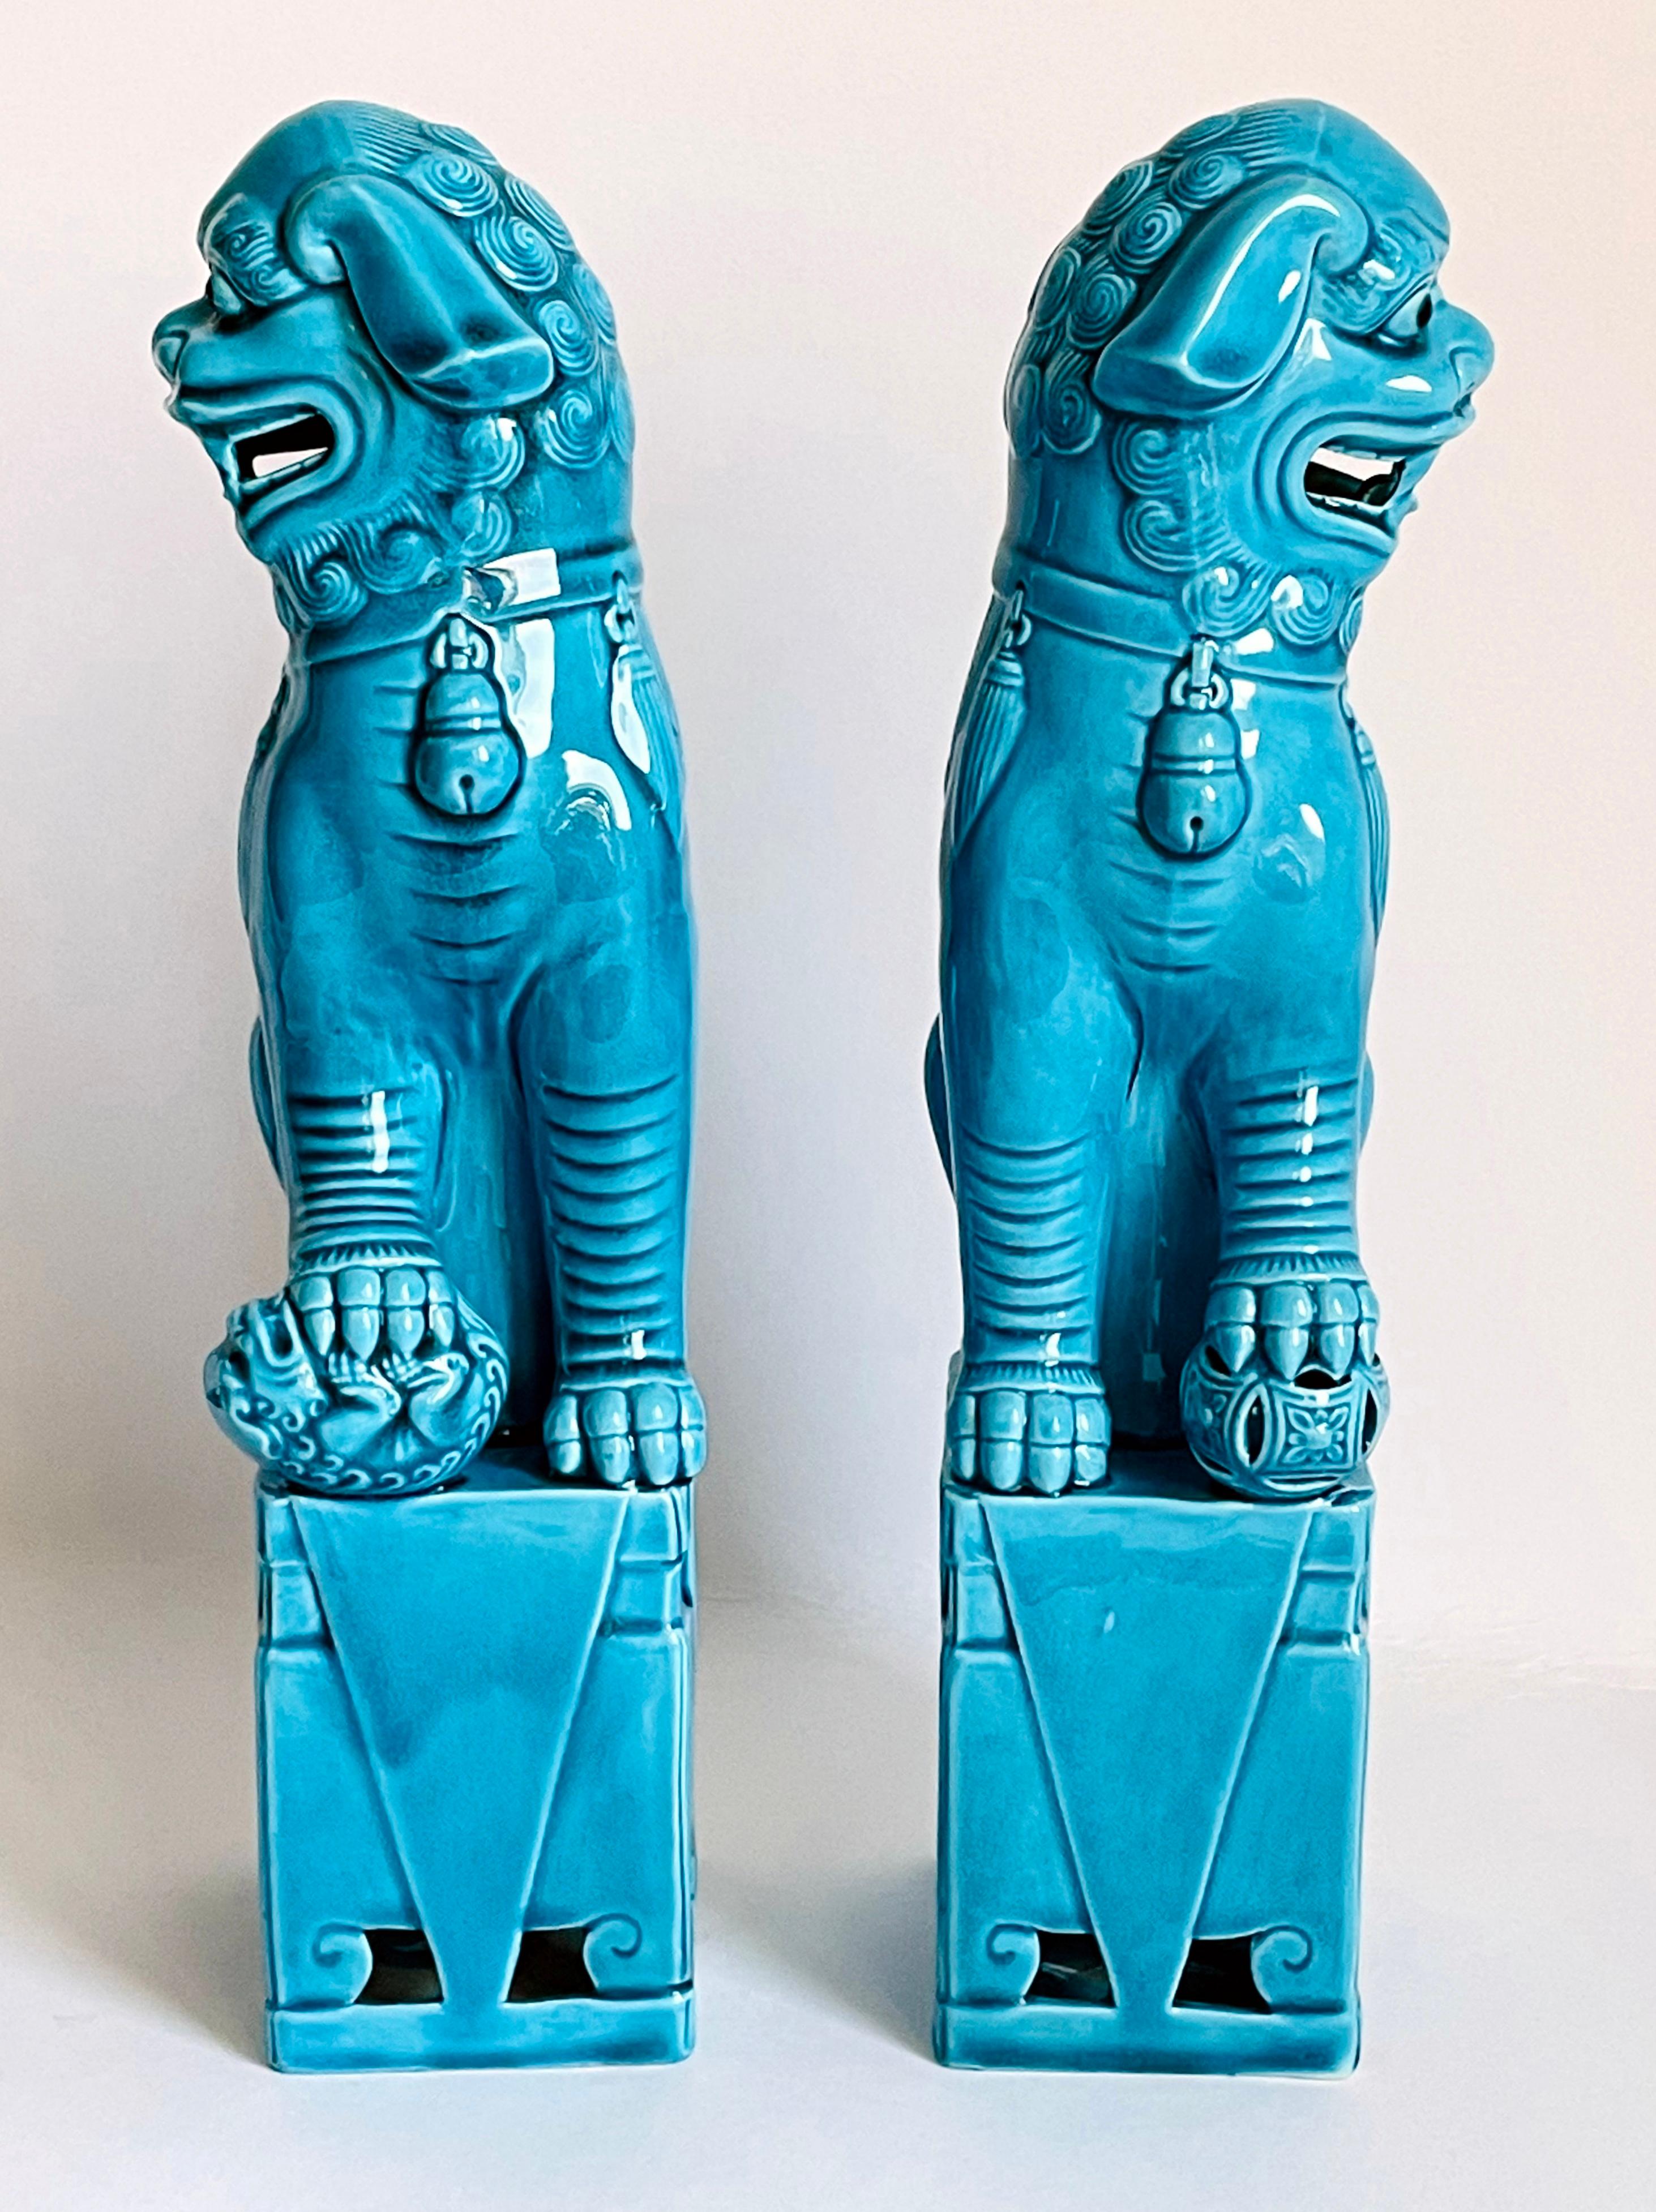 Paire de chiens foo chinois en turquoise émaillée, finement détaillée. Les figurines creuses en porcelaine biscuit reposent sur une base rectangulaire et regardent de côté, la bouche ouverte et la langue montrant les dents, chacune ayant une patte